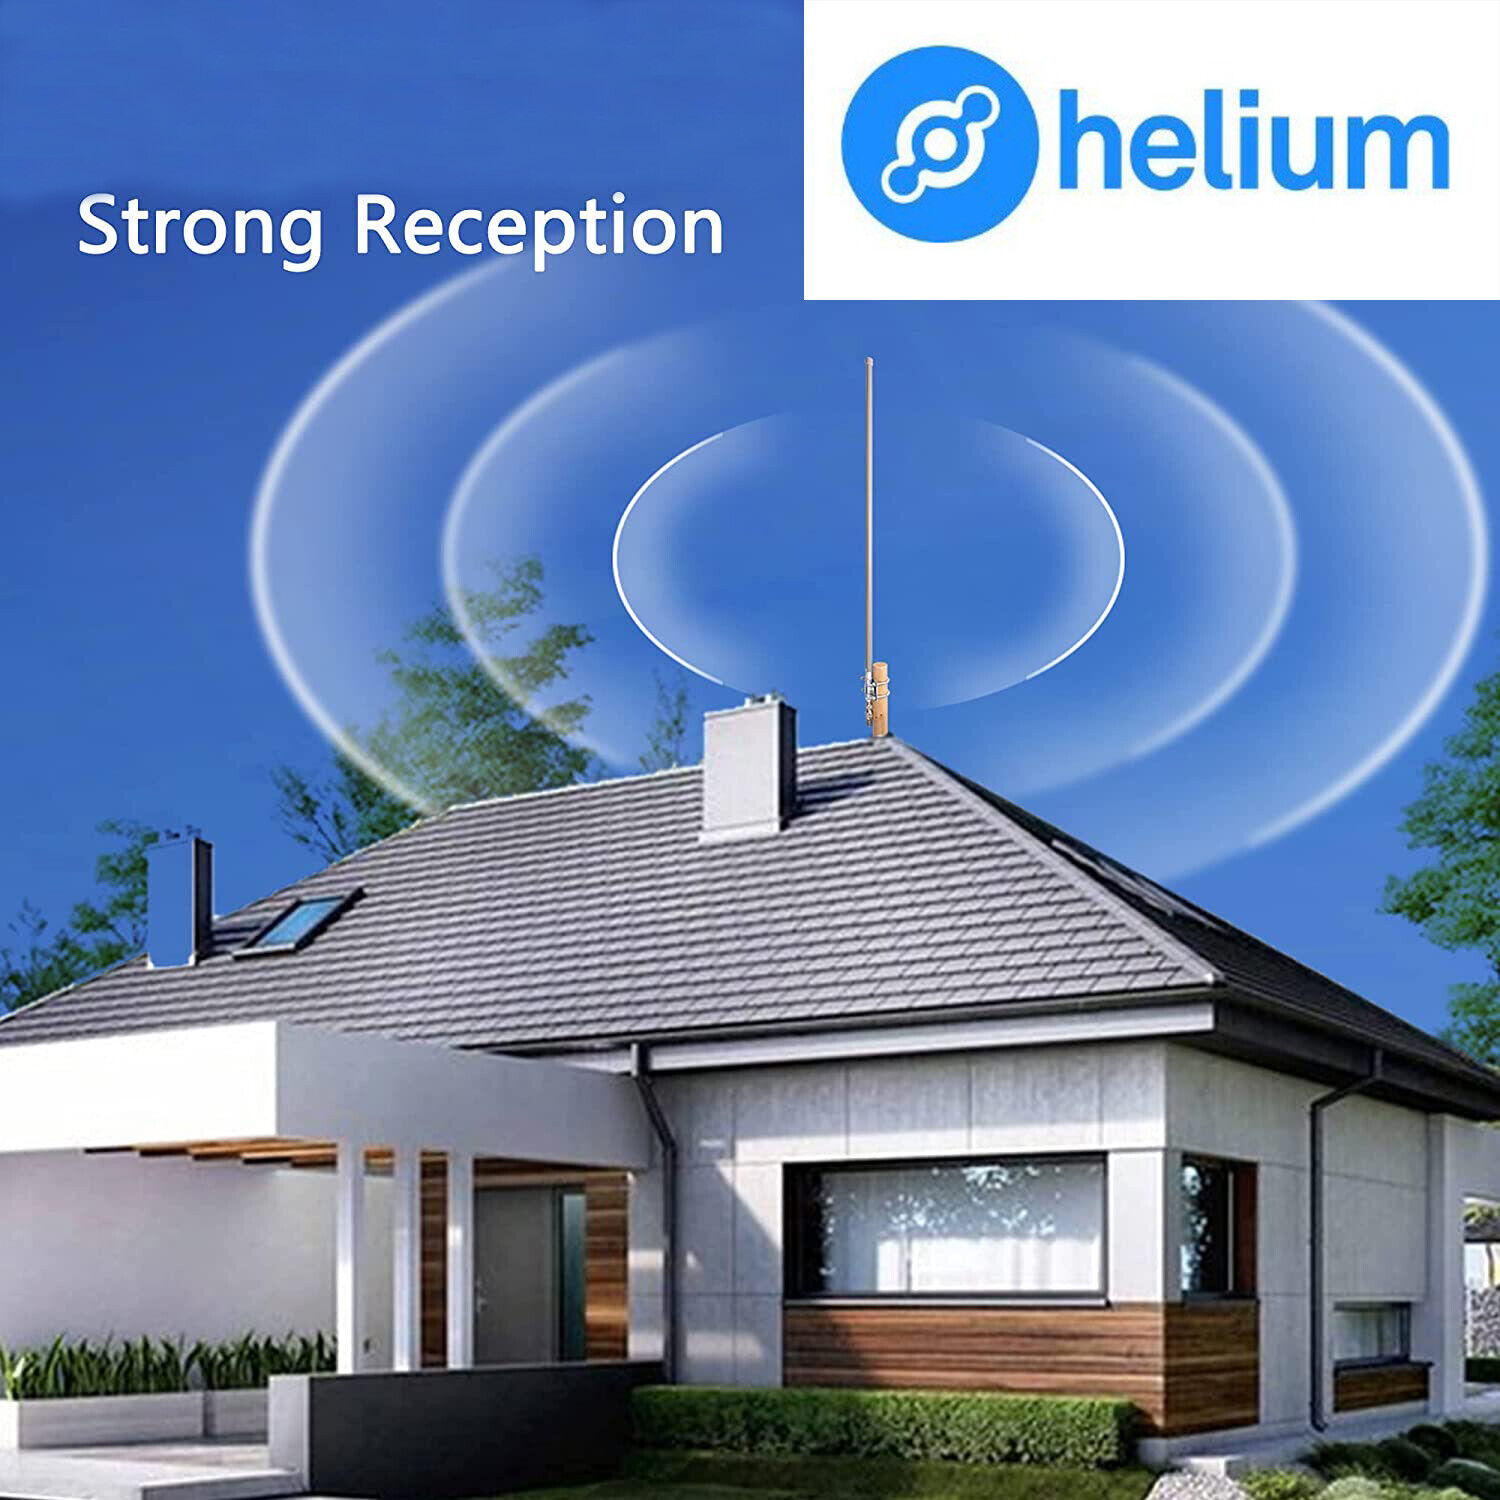 Helium Antenna 13 dBi Sensecap Kerlink SYNCROBIT NEBRA BOBCAT 10' LMR400 COMBO Koopje, beperkte verkoop